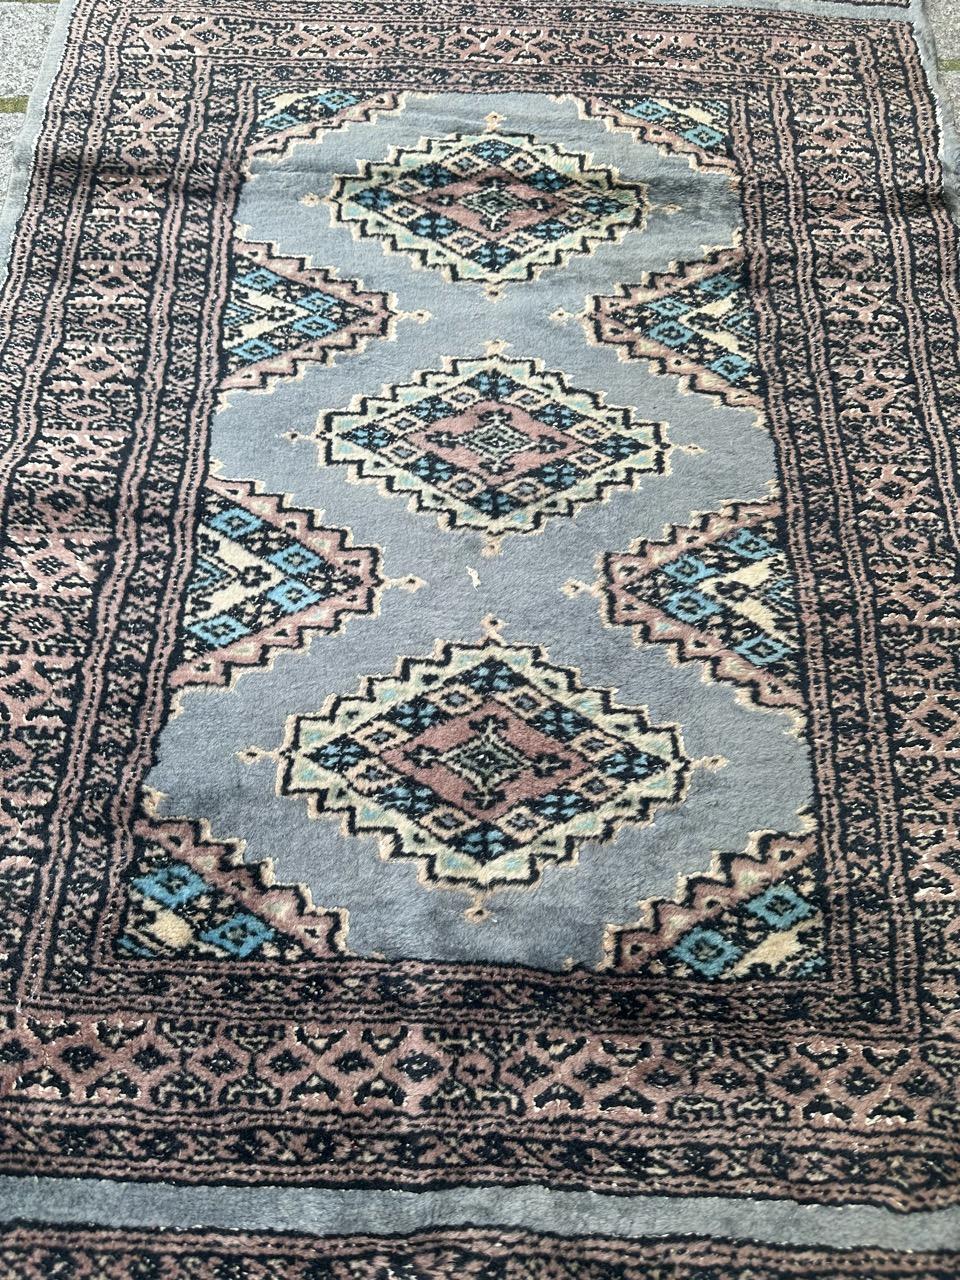 Magnifique tapis pakistanais de la fin du 20e siècle avec un design tribal turkmène et de belles couleurs avec du bleu gris, du rose, du noir et du blanc. Entièrement noué à la main avec de la laine et de la soie sur une base de